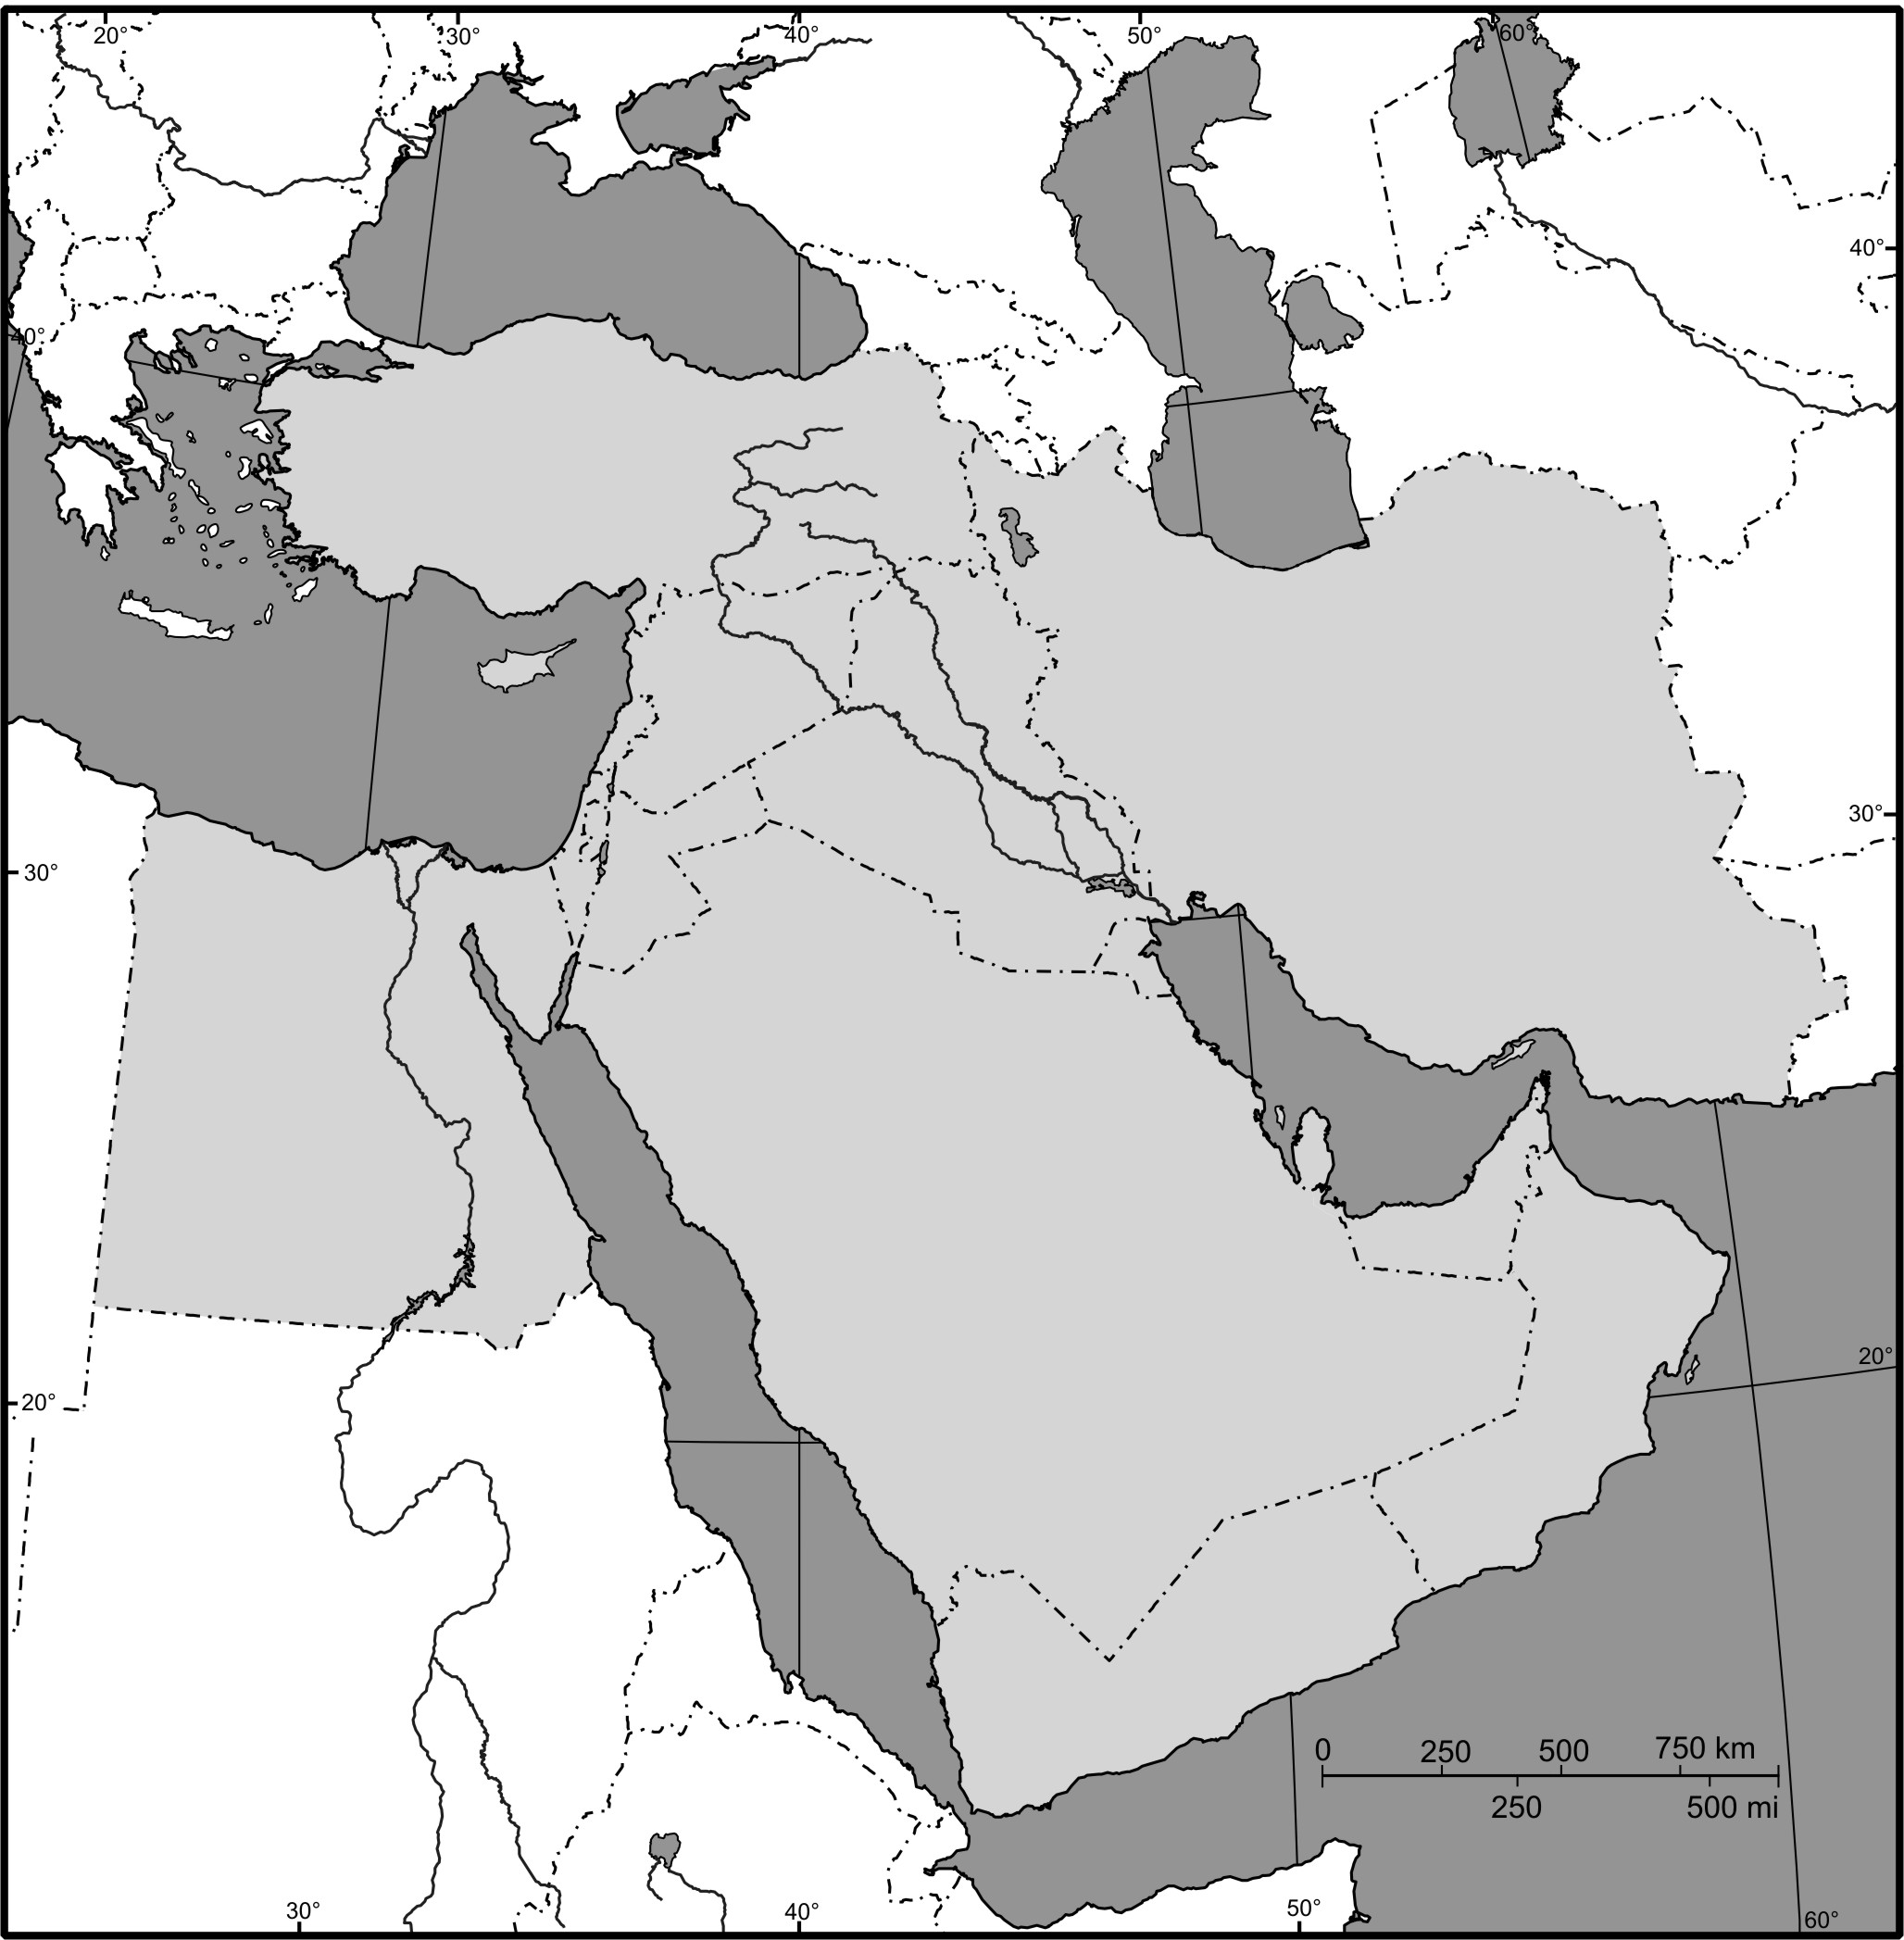 sentar Legibilidad Herencia Mapa mudo de Oriente Medio - Tamaño completo | Gifex